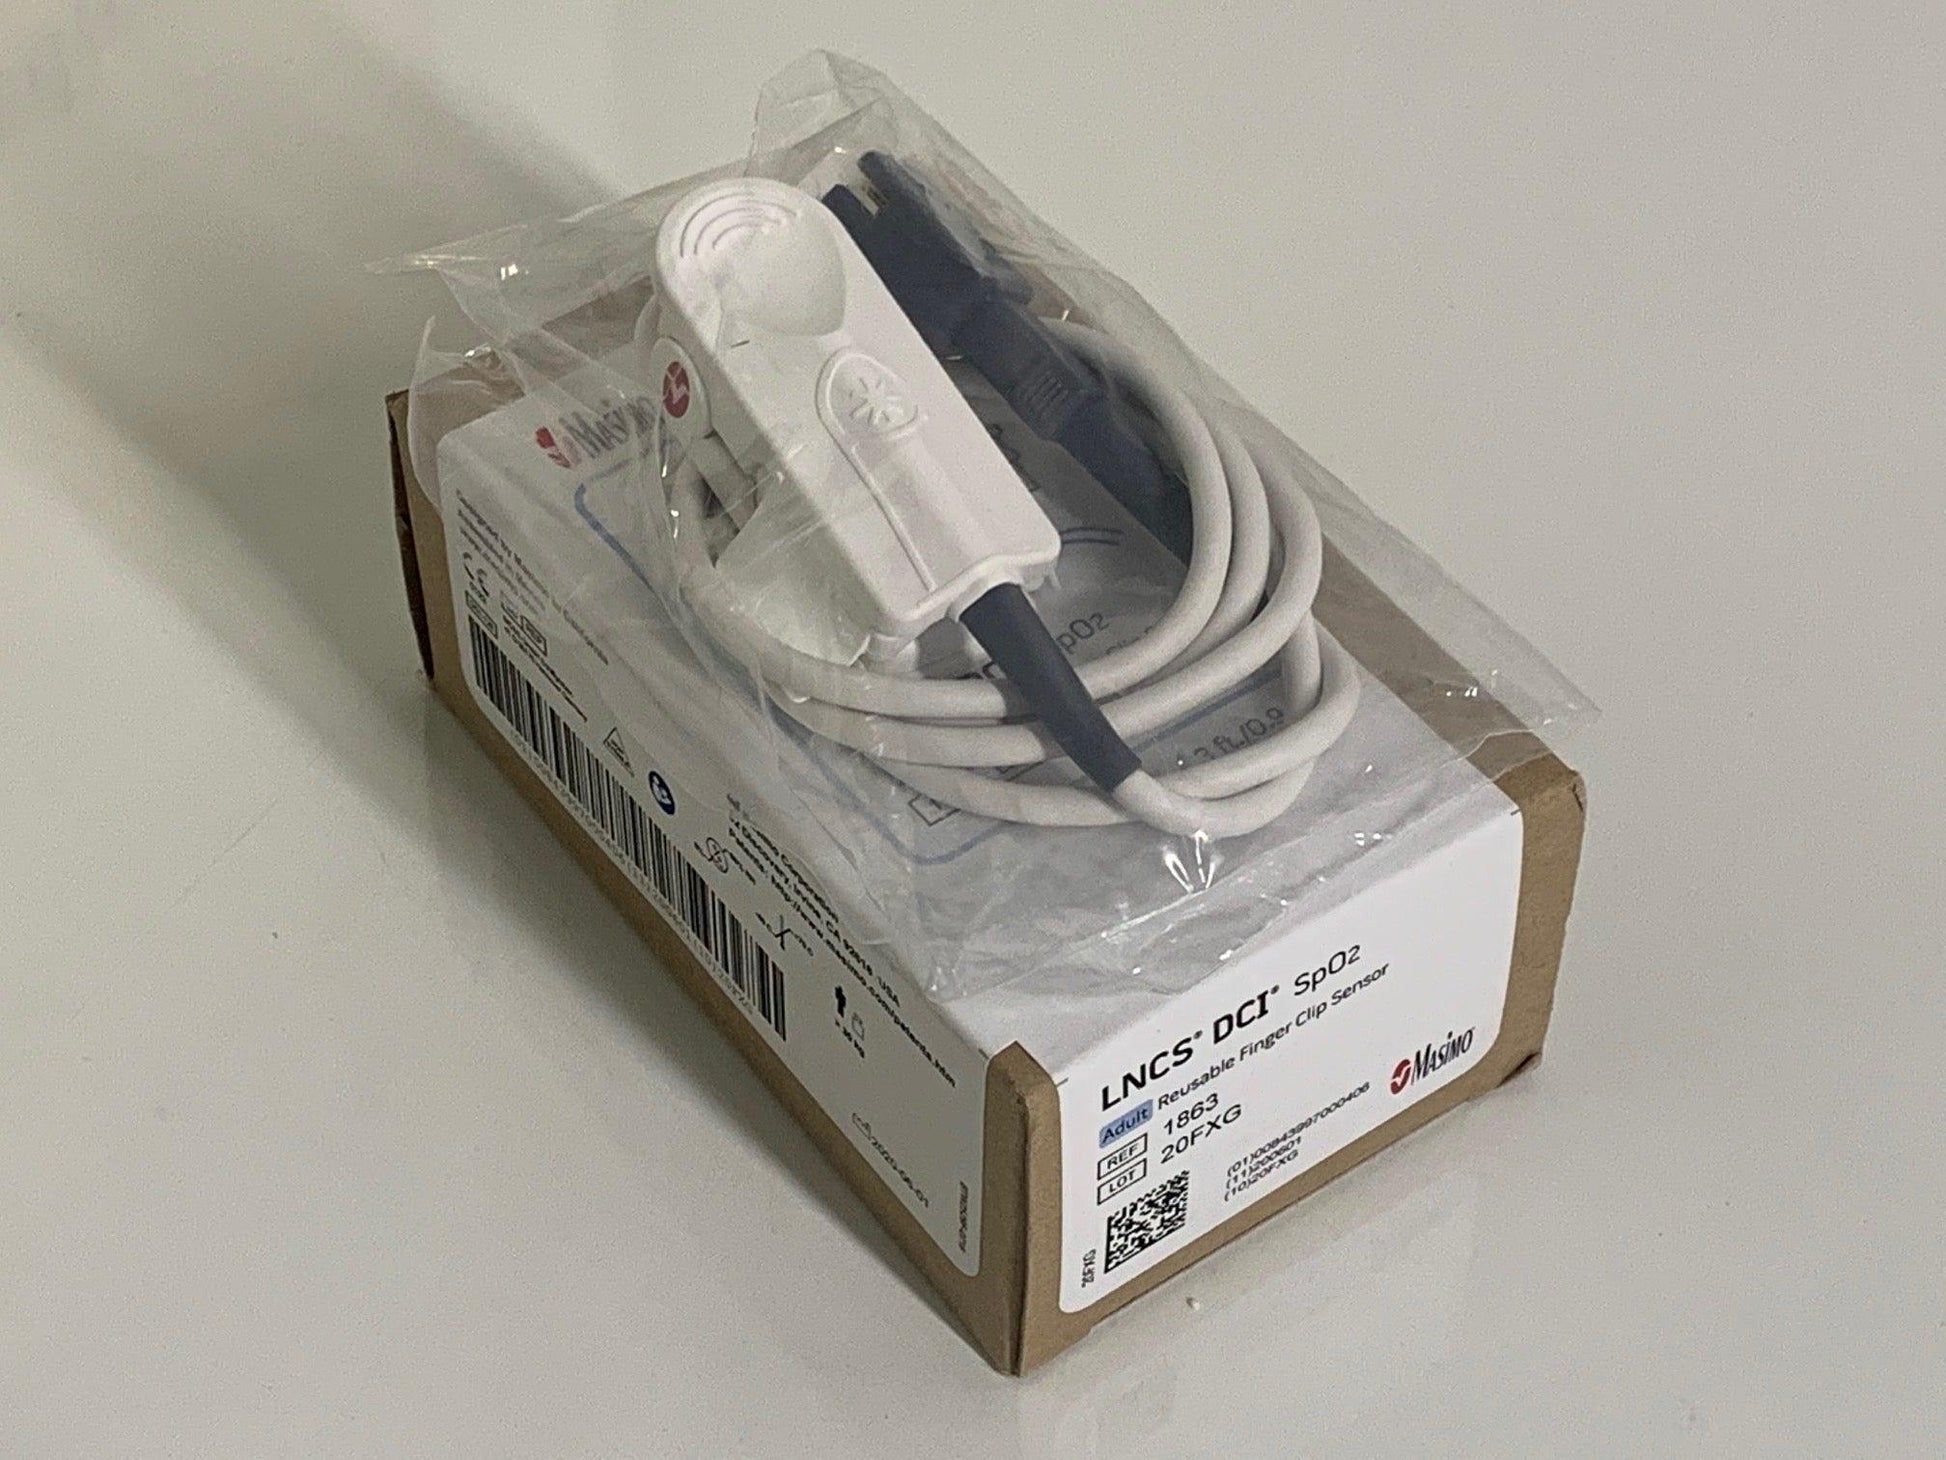 New Breas SpO2 Masimo 1863 Reusable Adult Finger Clip Sensor 006589 - MBR Medicals